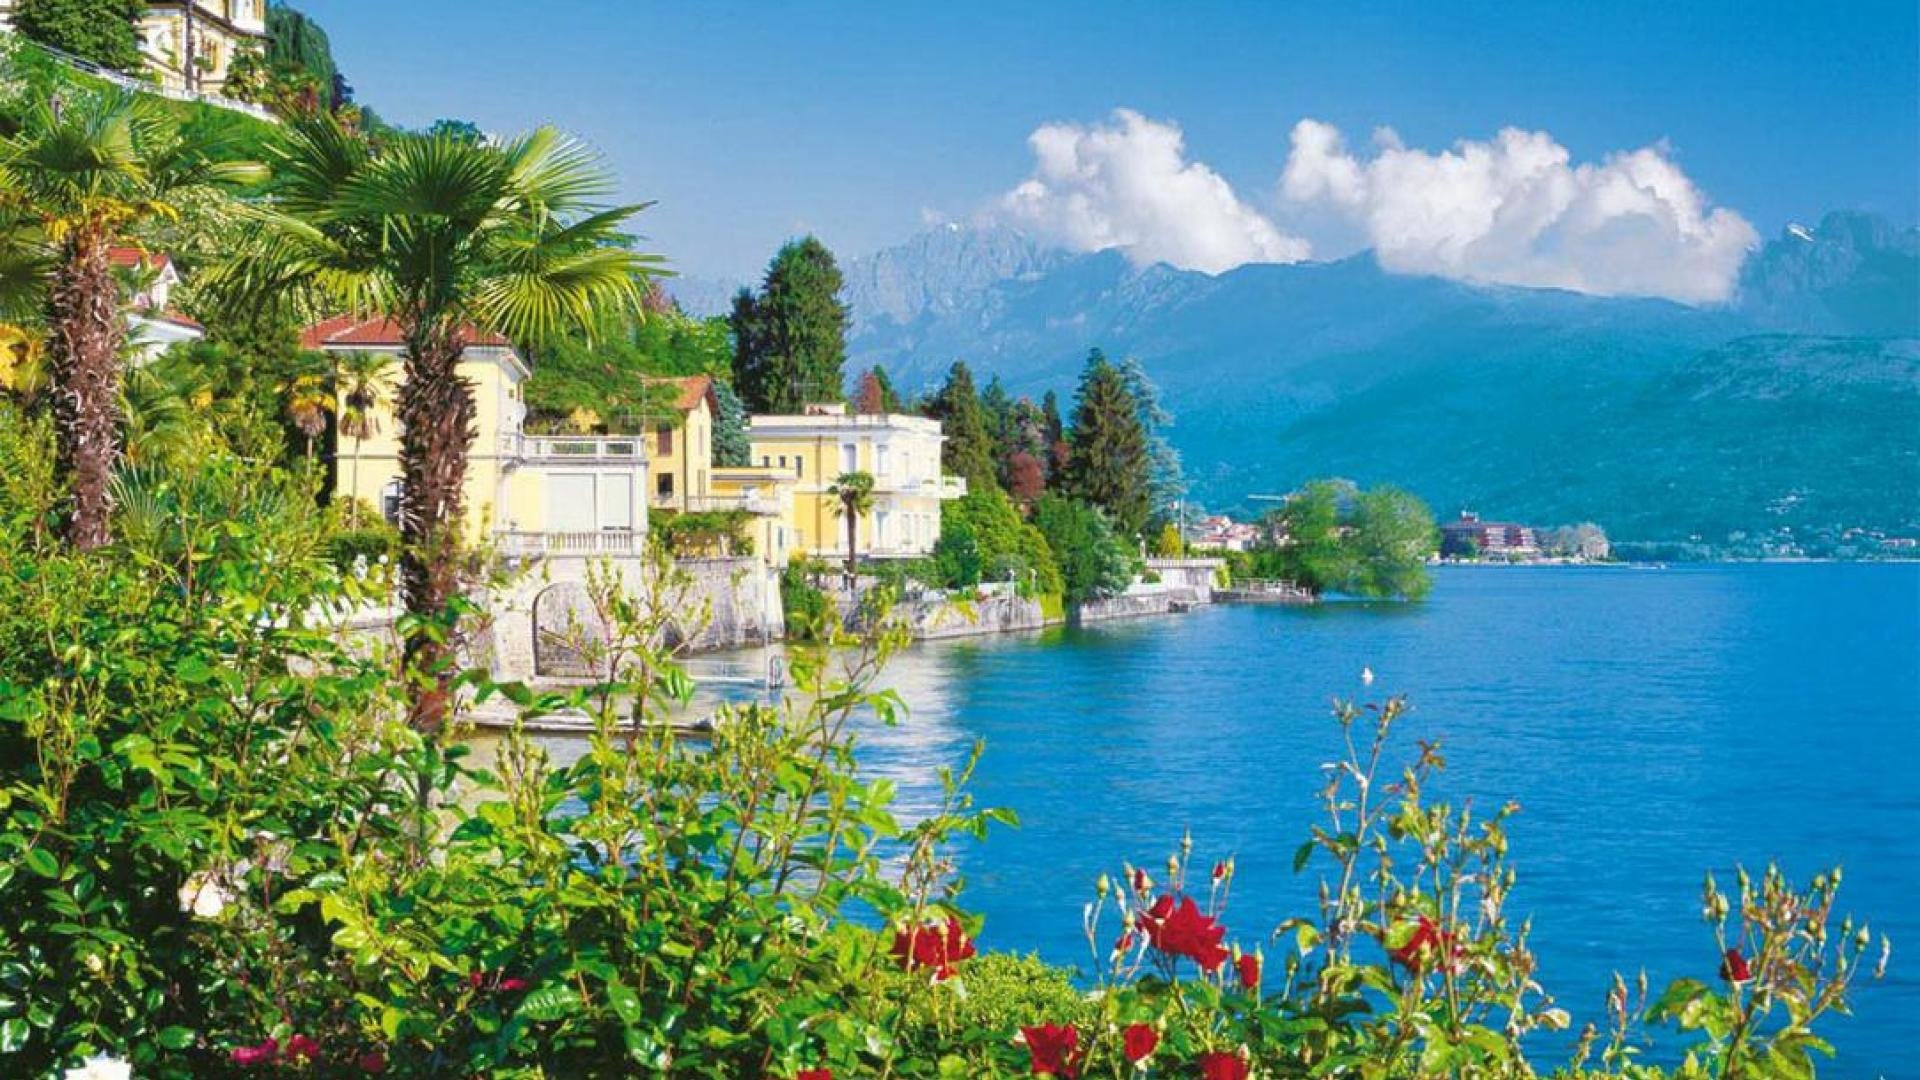 A Lombardia e os mais belos lagos italianos